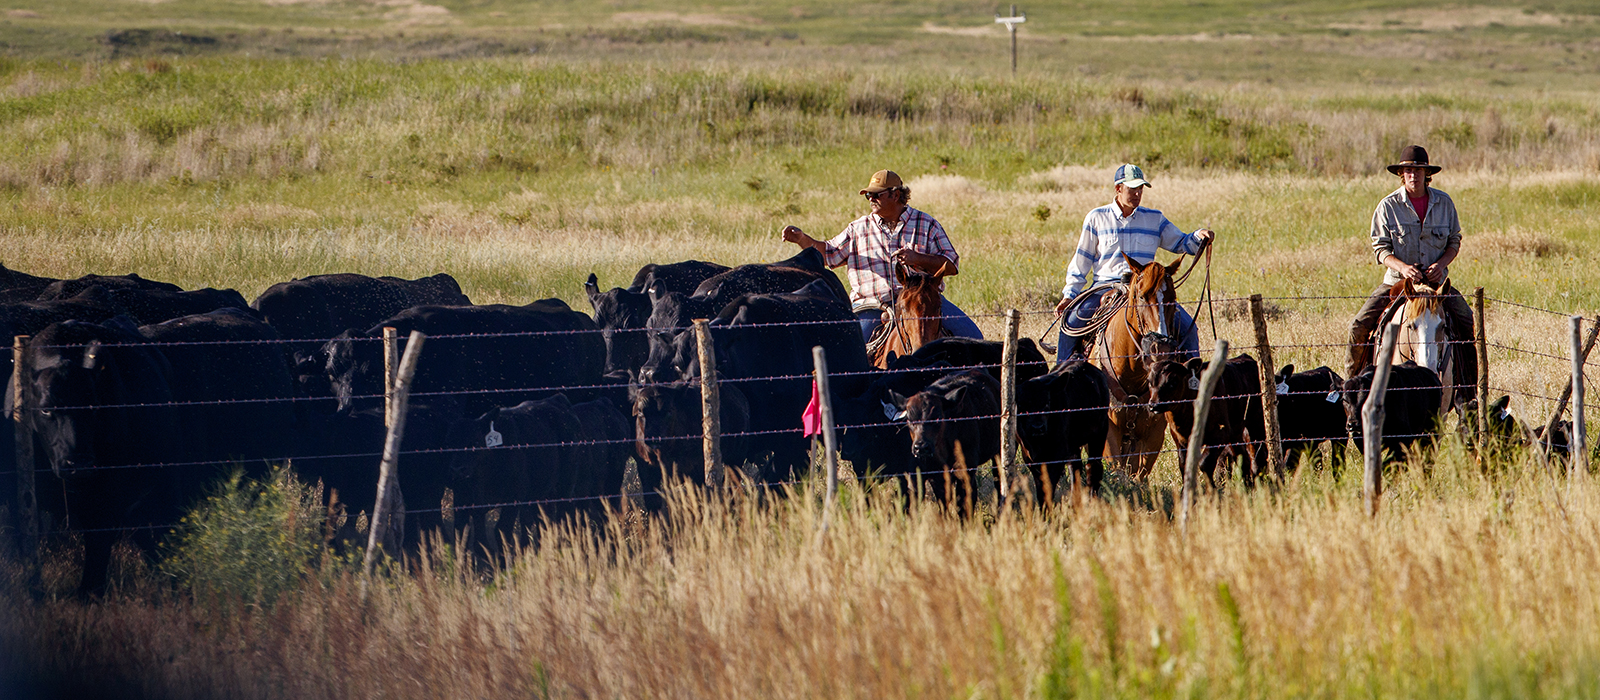 moving cattle on horseback